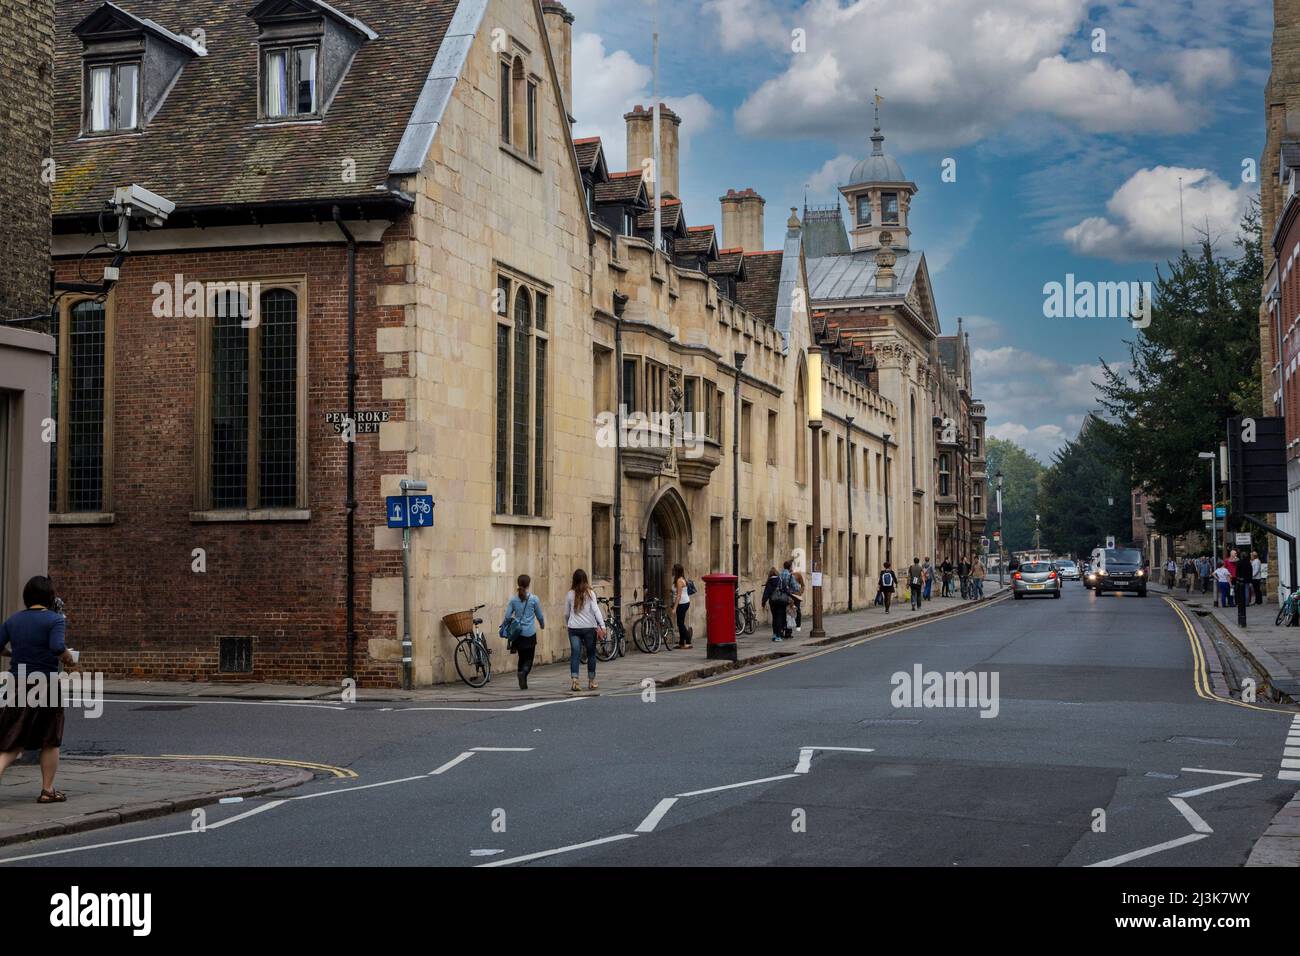 Royaume-uni, Angleterre, Cambridge. Pembroke College, Trumpington Street. Caméra de sécurité en haut à gauche. Banque D'Images